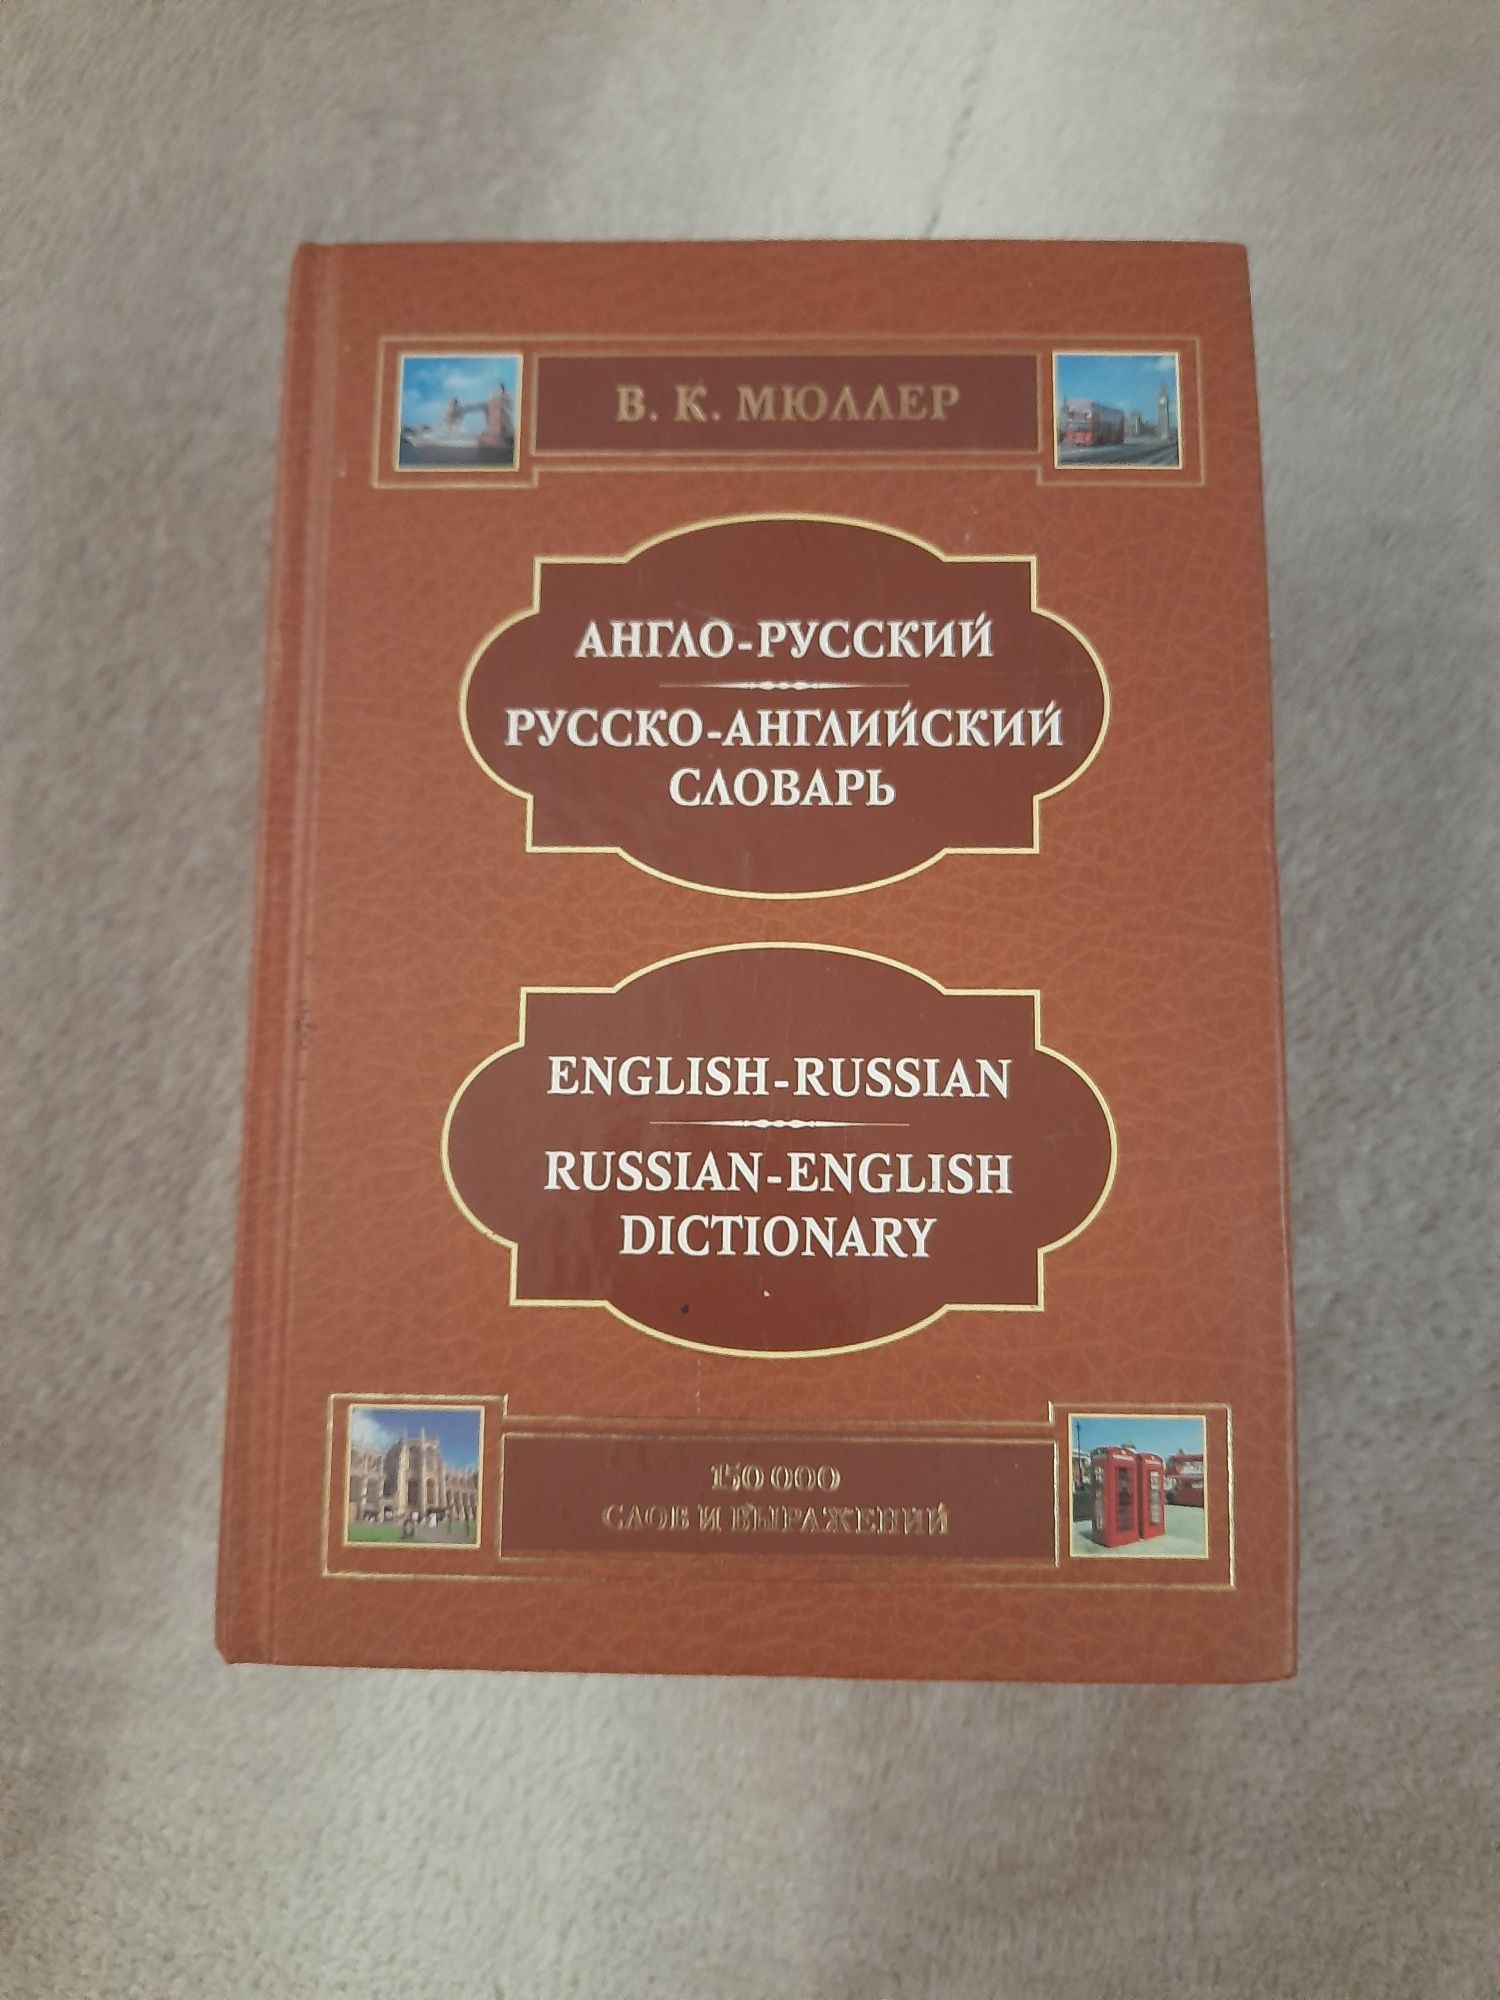 Продам словарь русско- английский